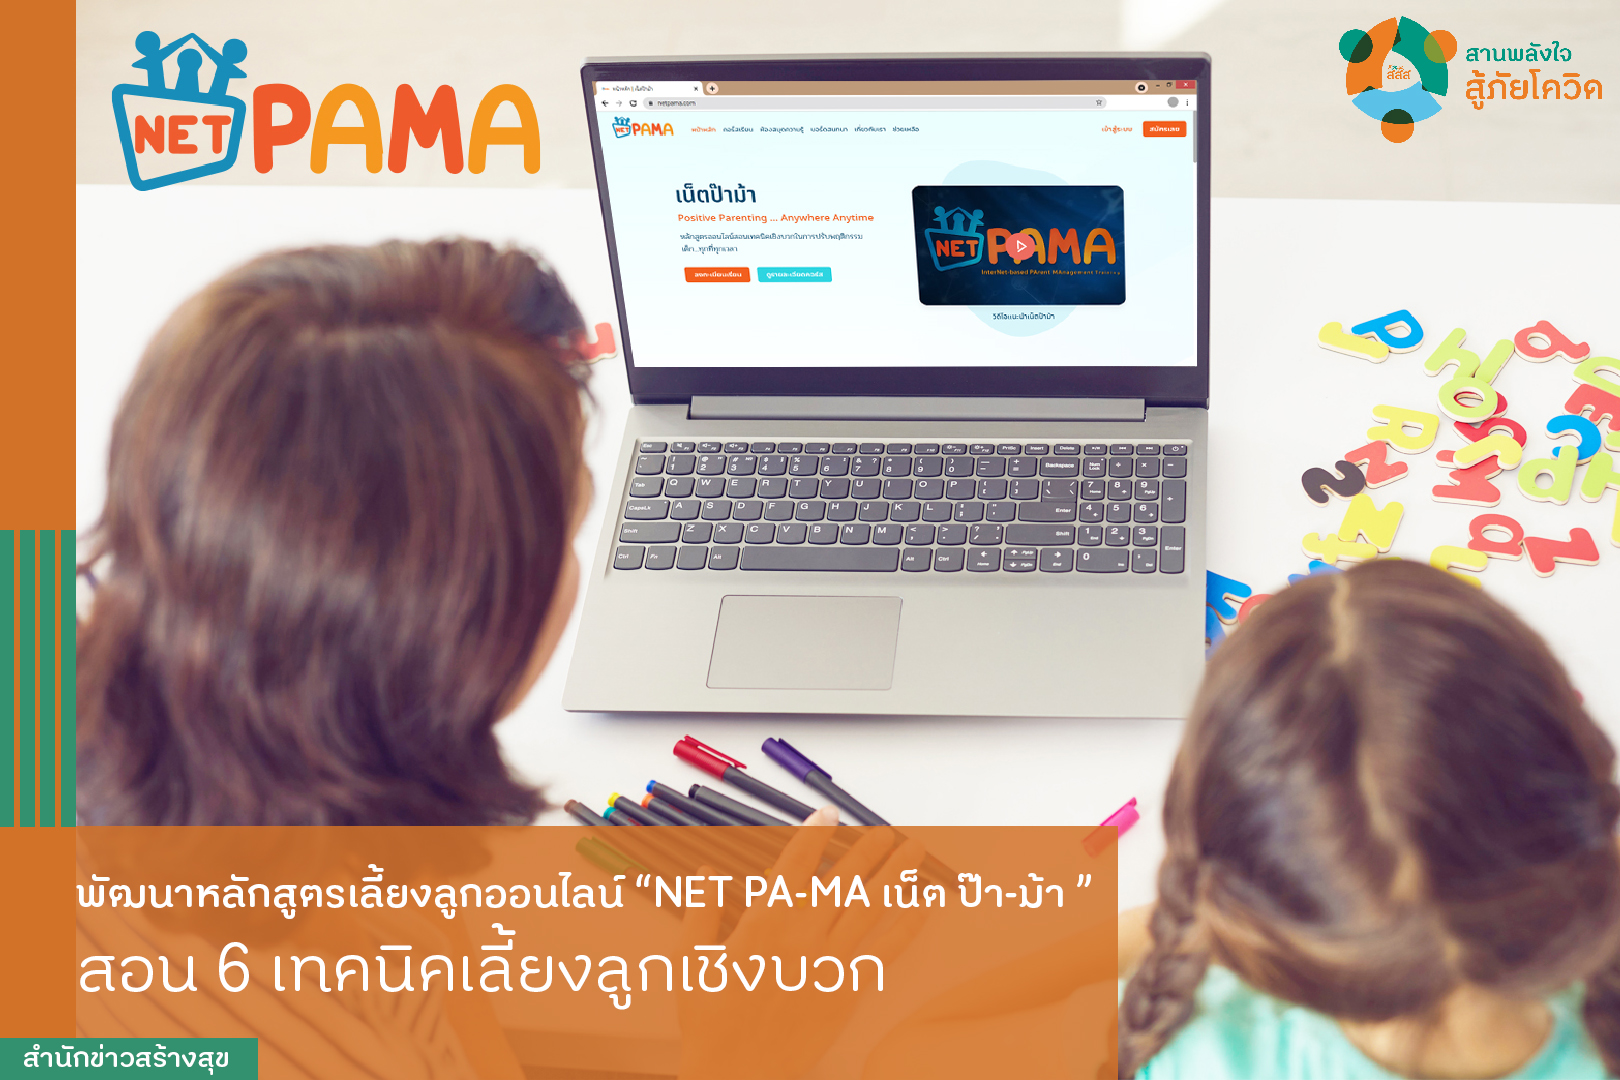 พัฒนาหลักสูตรเลี้ยงลูกออนไลน์ NET PA-MA เน็ต ป๊า-ม้า สอน 6 เทคนิคเลี้ยงลูกเชิงบวก   thaihealth